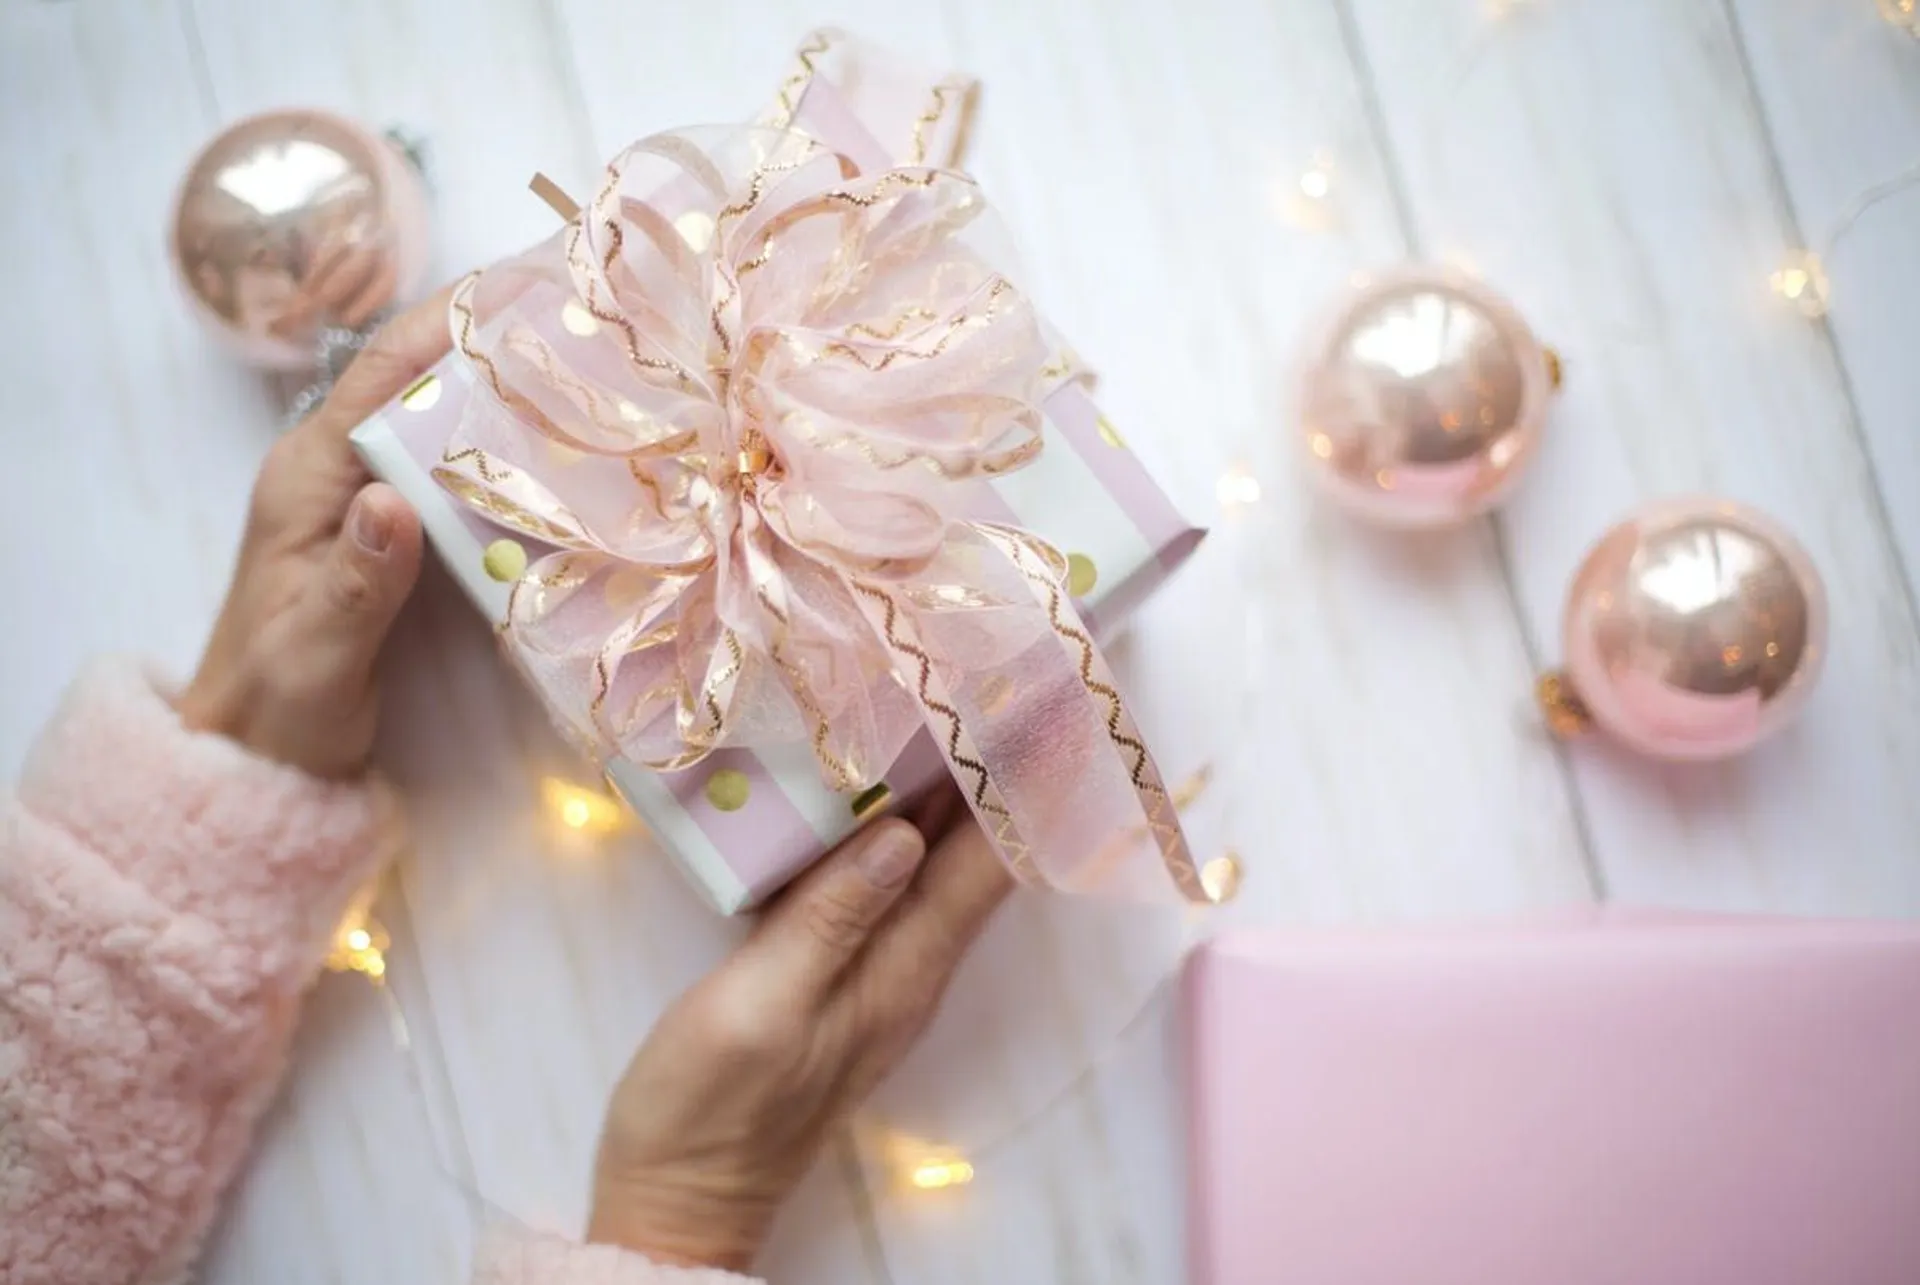 Χριστουγεννιάτικες χειροτεχνίες: δημιουργία χειροποίητων δώρων